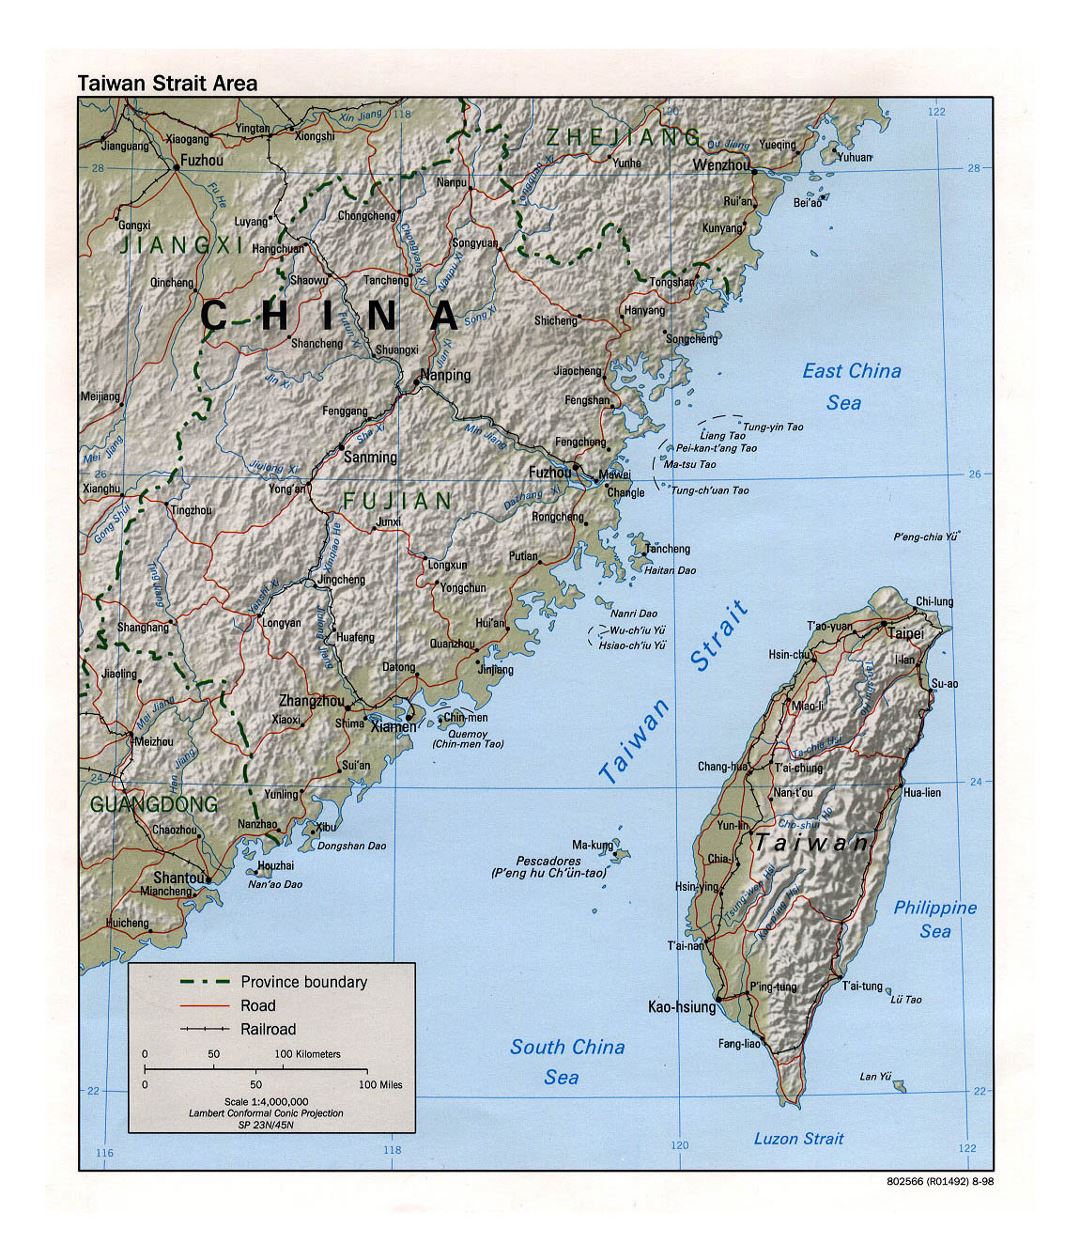 Детальная карта района Тайваньского пролива с рельефом, дорогами, железными дорогами и крупными городами - 1998